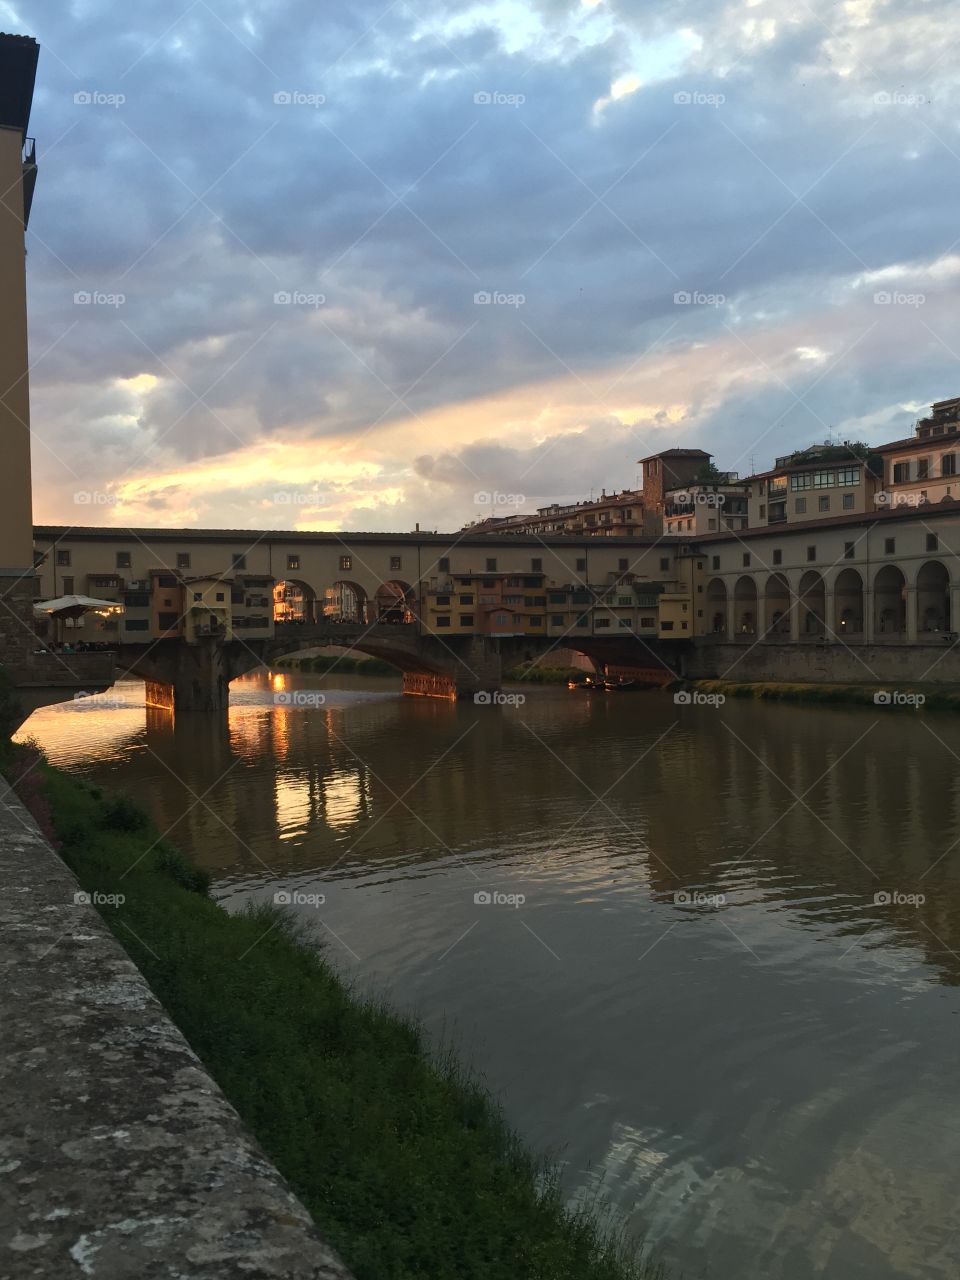 Firenzie sunset